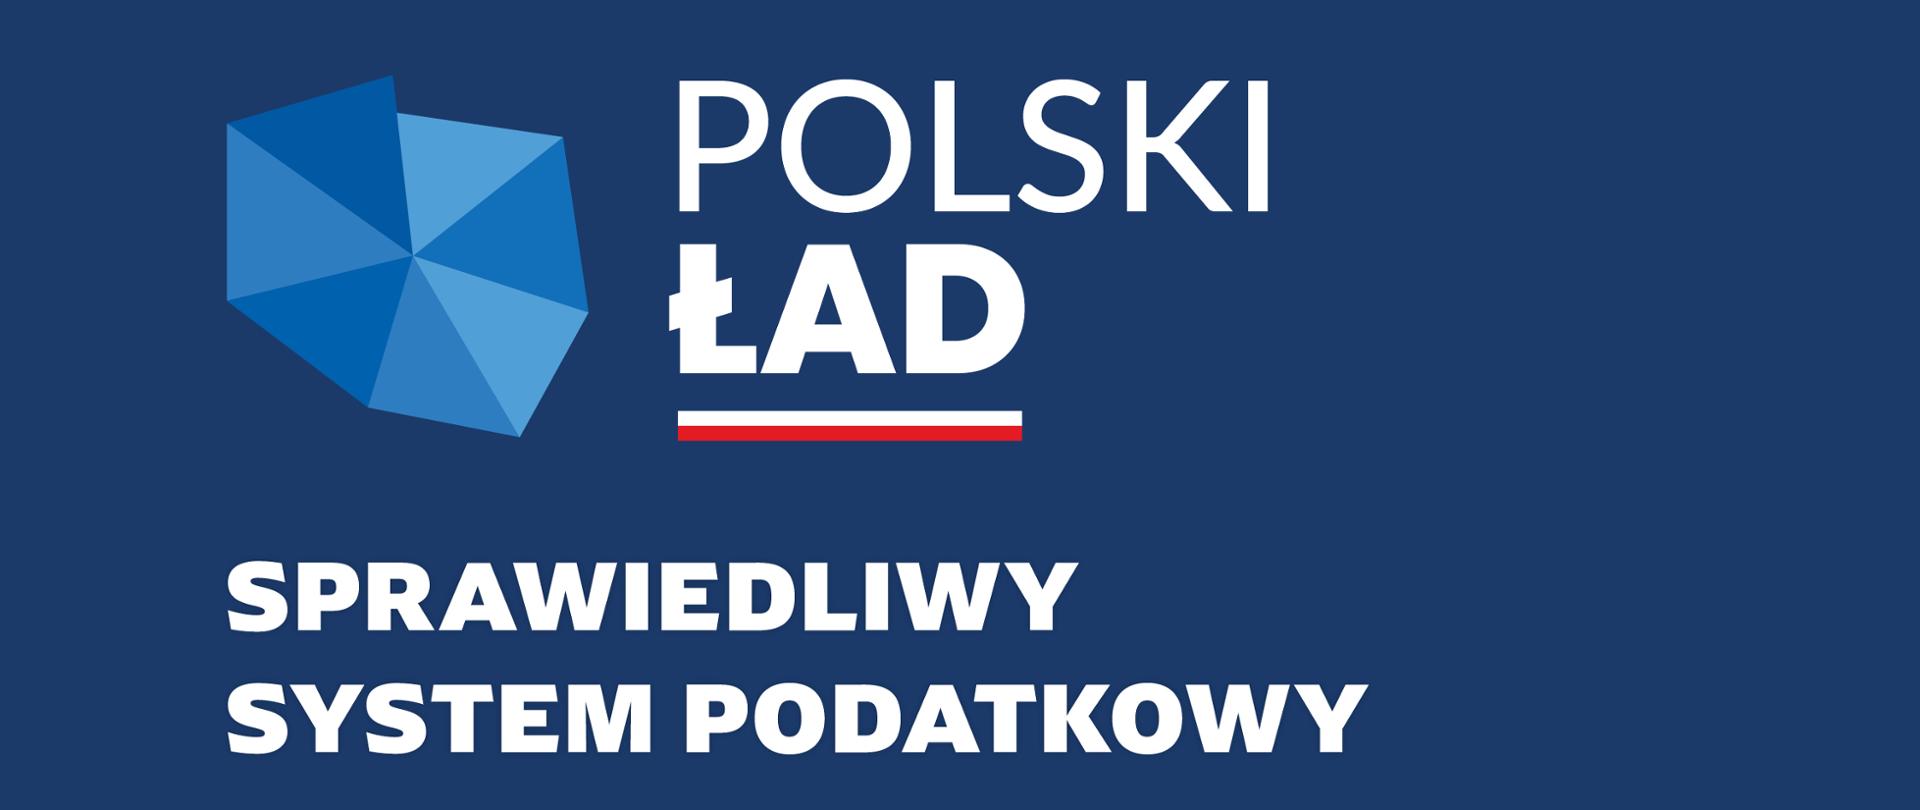 Kontur Polski, napis: Polski Ład, sprawiedliwy system podatkowy.